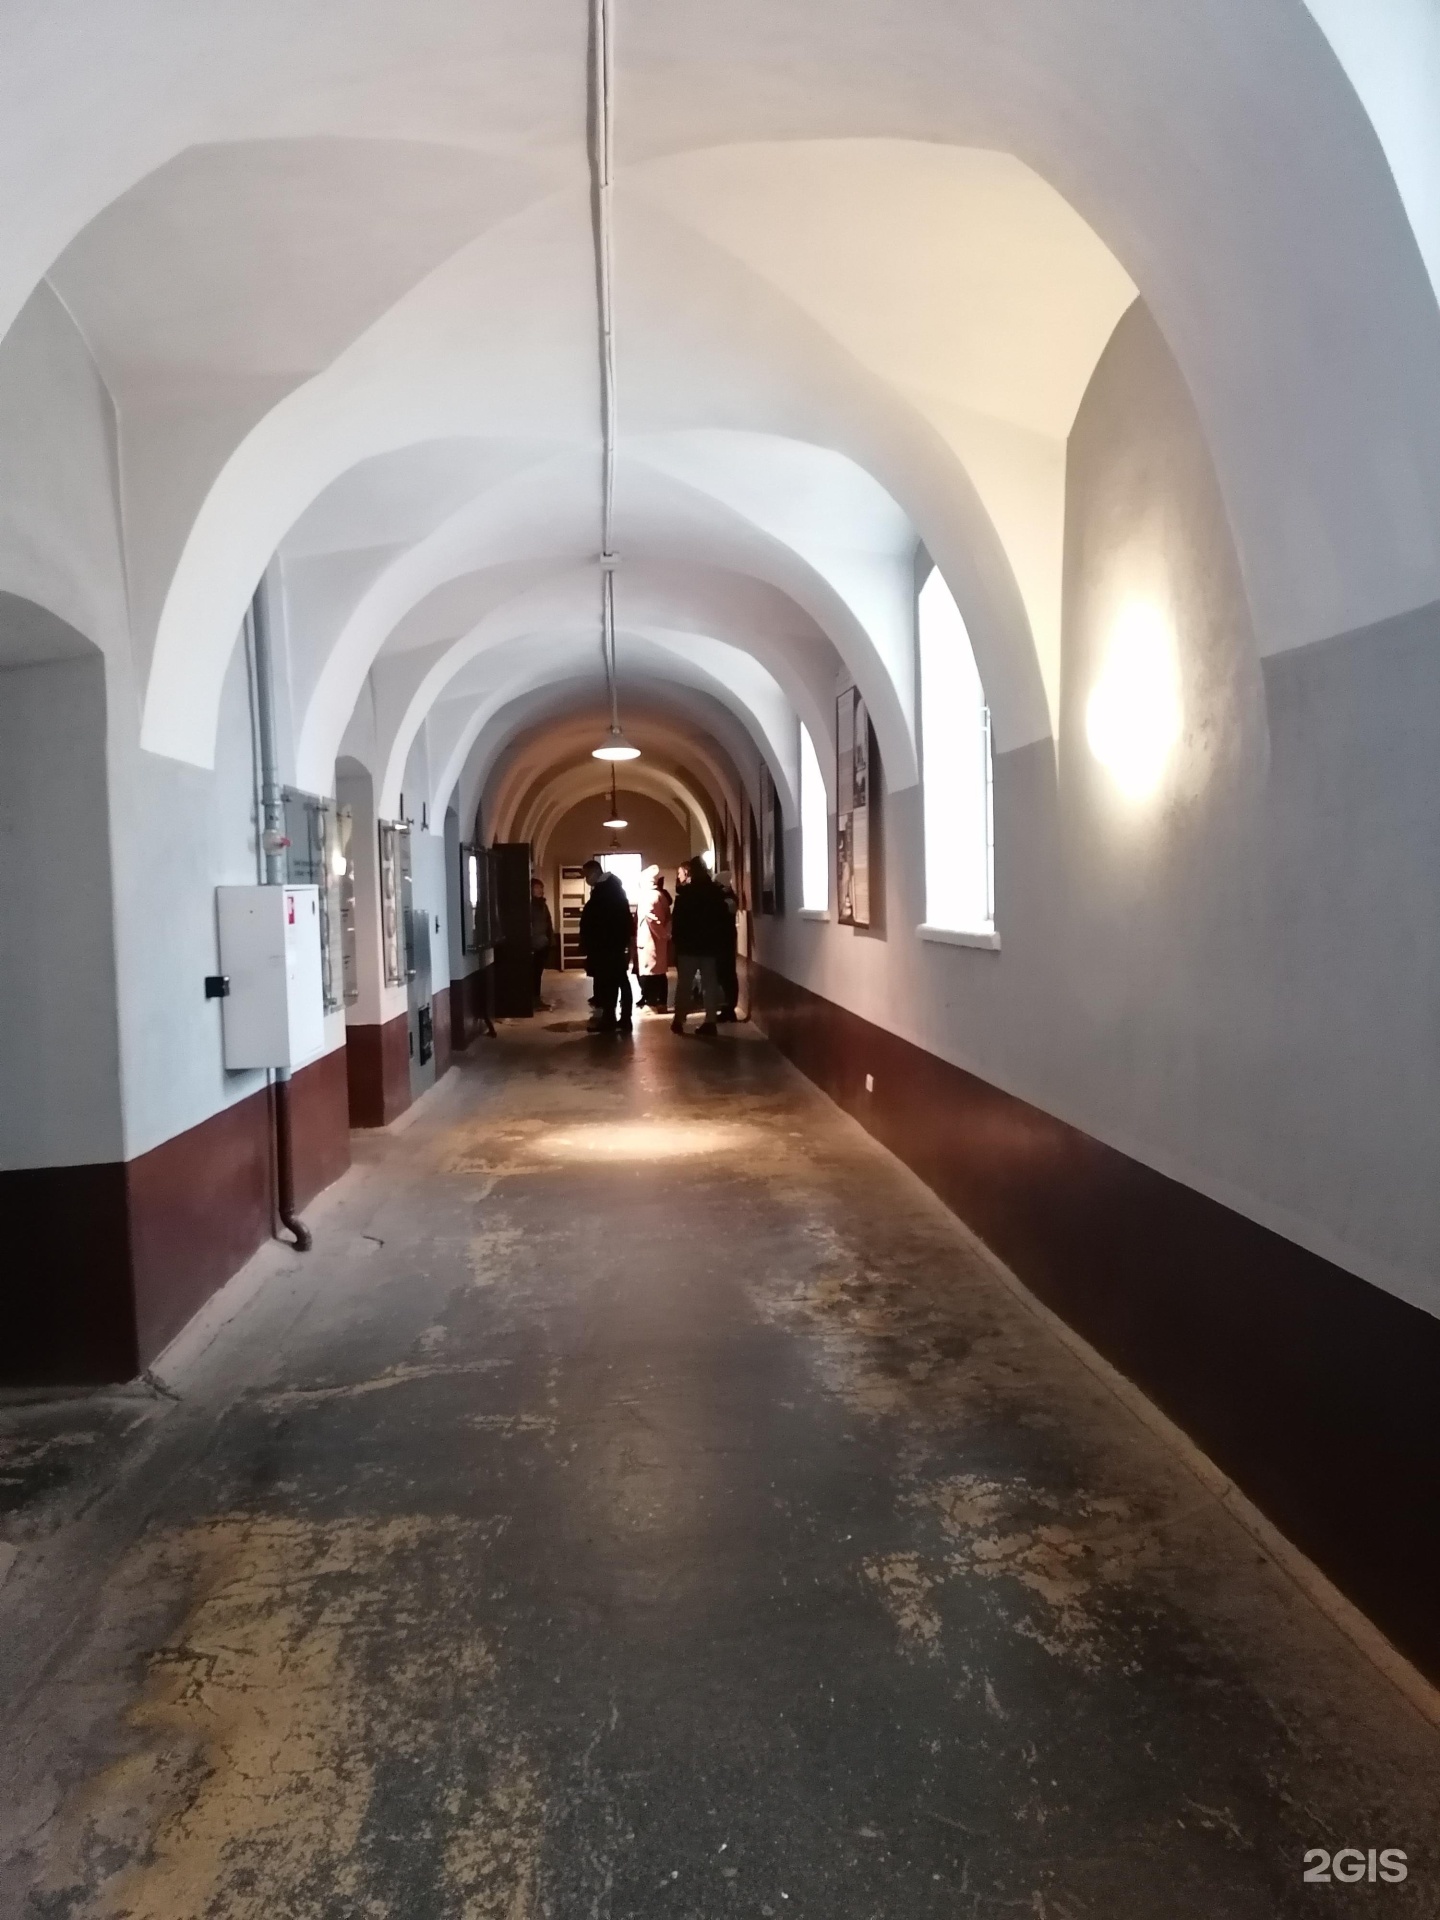 тюрьма трубецкого бастиона в санкт петербурге